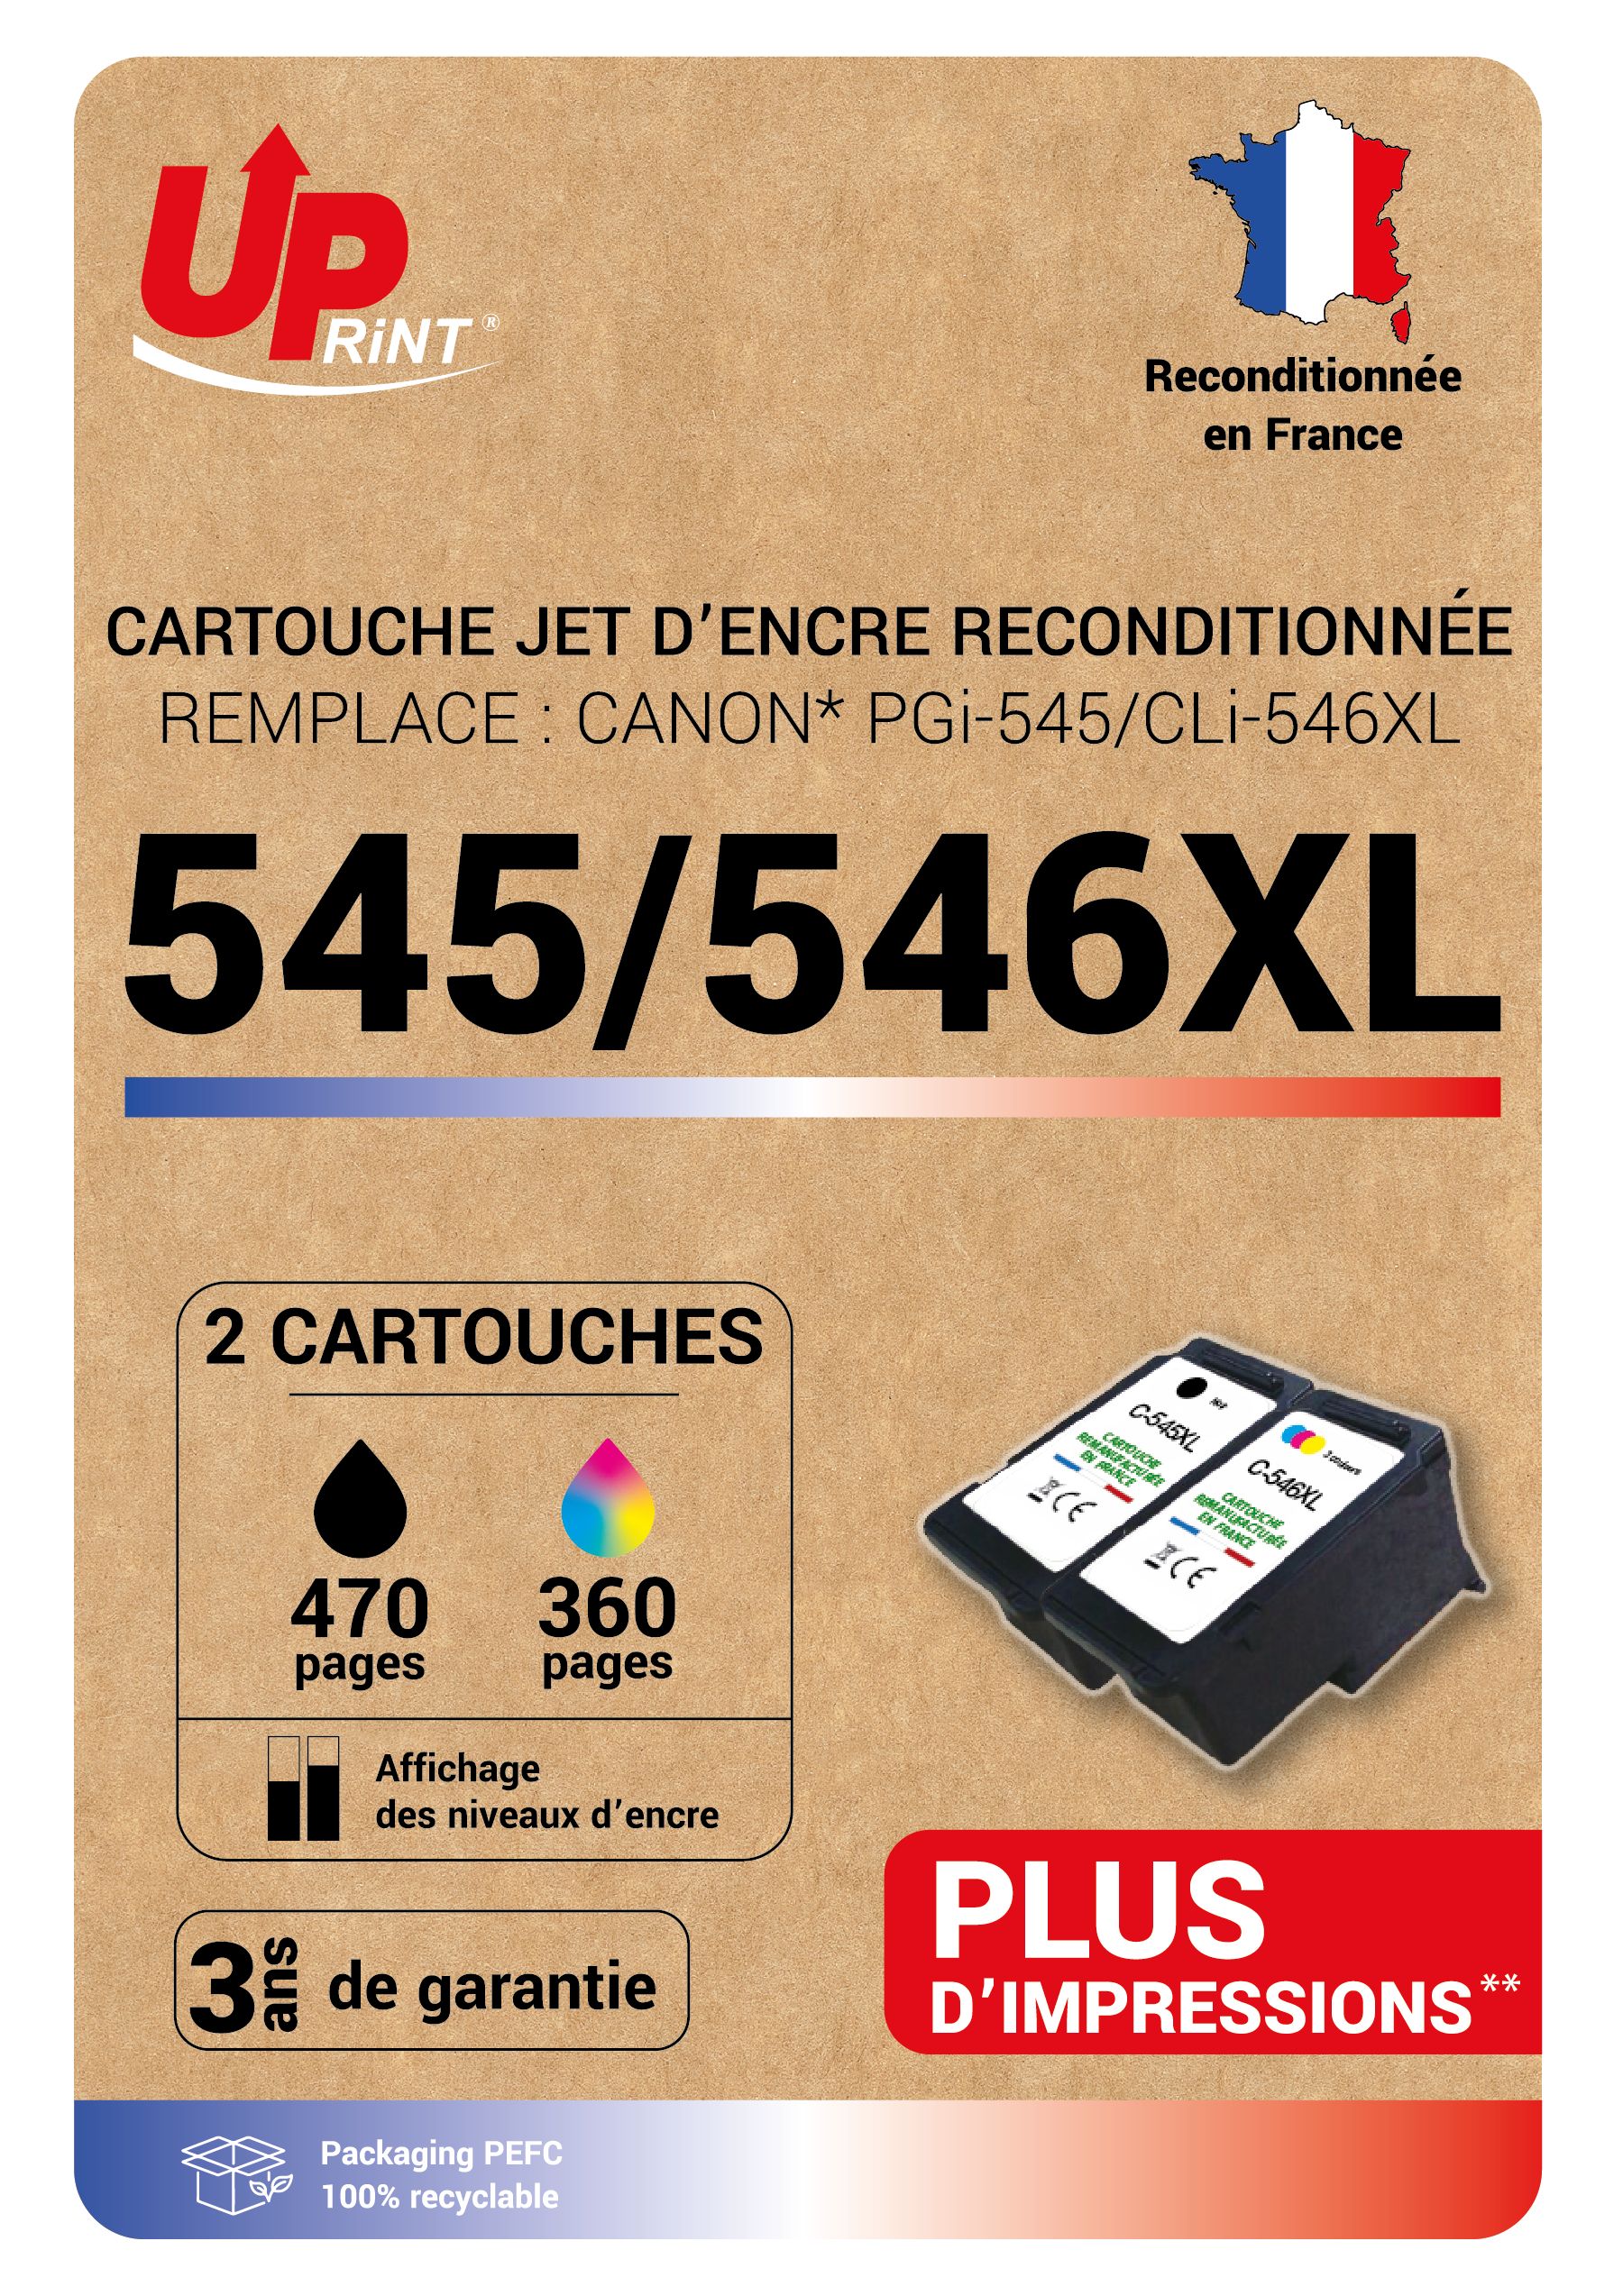 Cartouche compatible Canon PG-545/CL-546XL - Pack de 2 - noir, cyan, magenta, jaune - Uprint